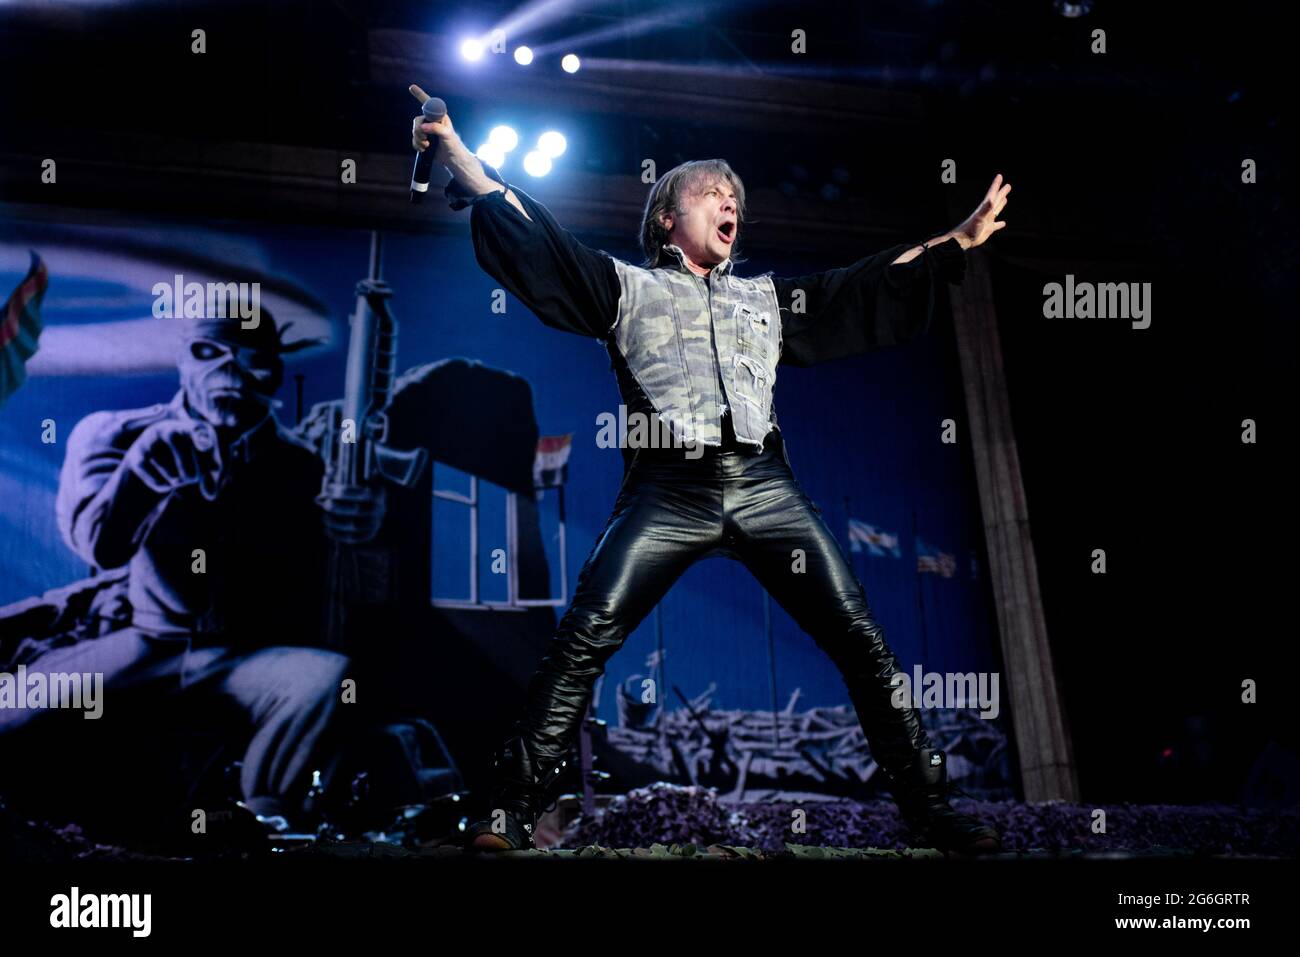 ZURIGO, HALLENSTADION, SVIZZERA: Bruce Dickinson, cantante della band inglese Iron Maiden, ha suonato in diretta sul palco all'Hallenstadion di Zurigo per il tour mondiale "Legacy of Beast" 2018 Foto Stock